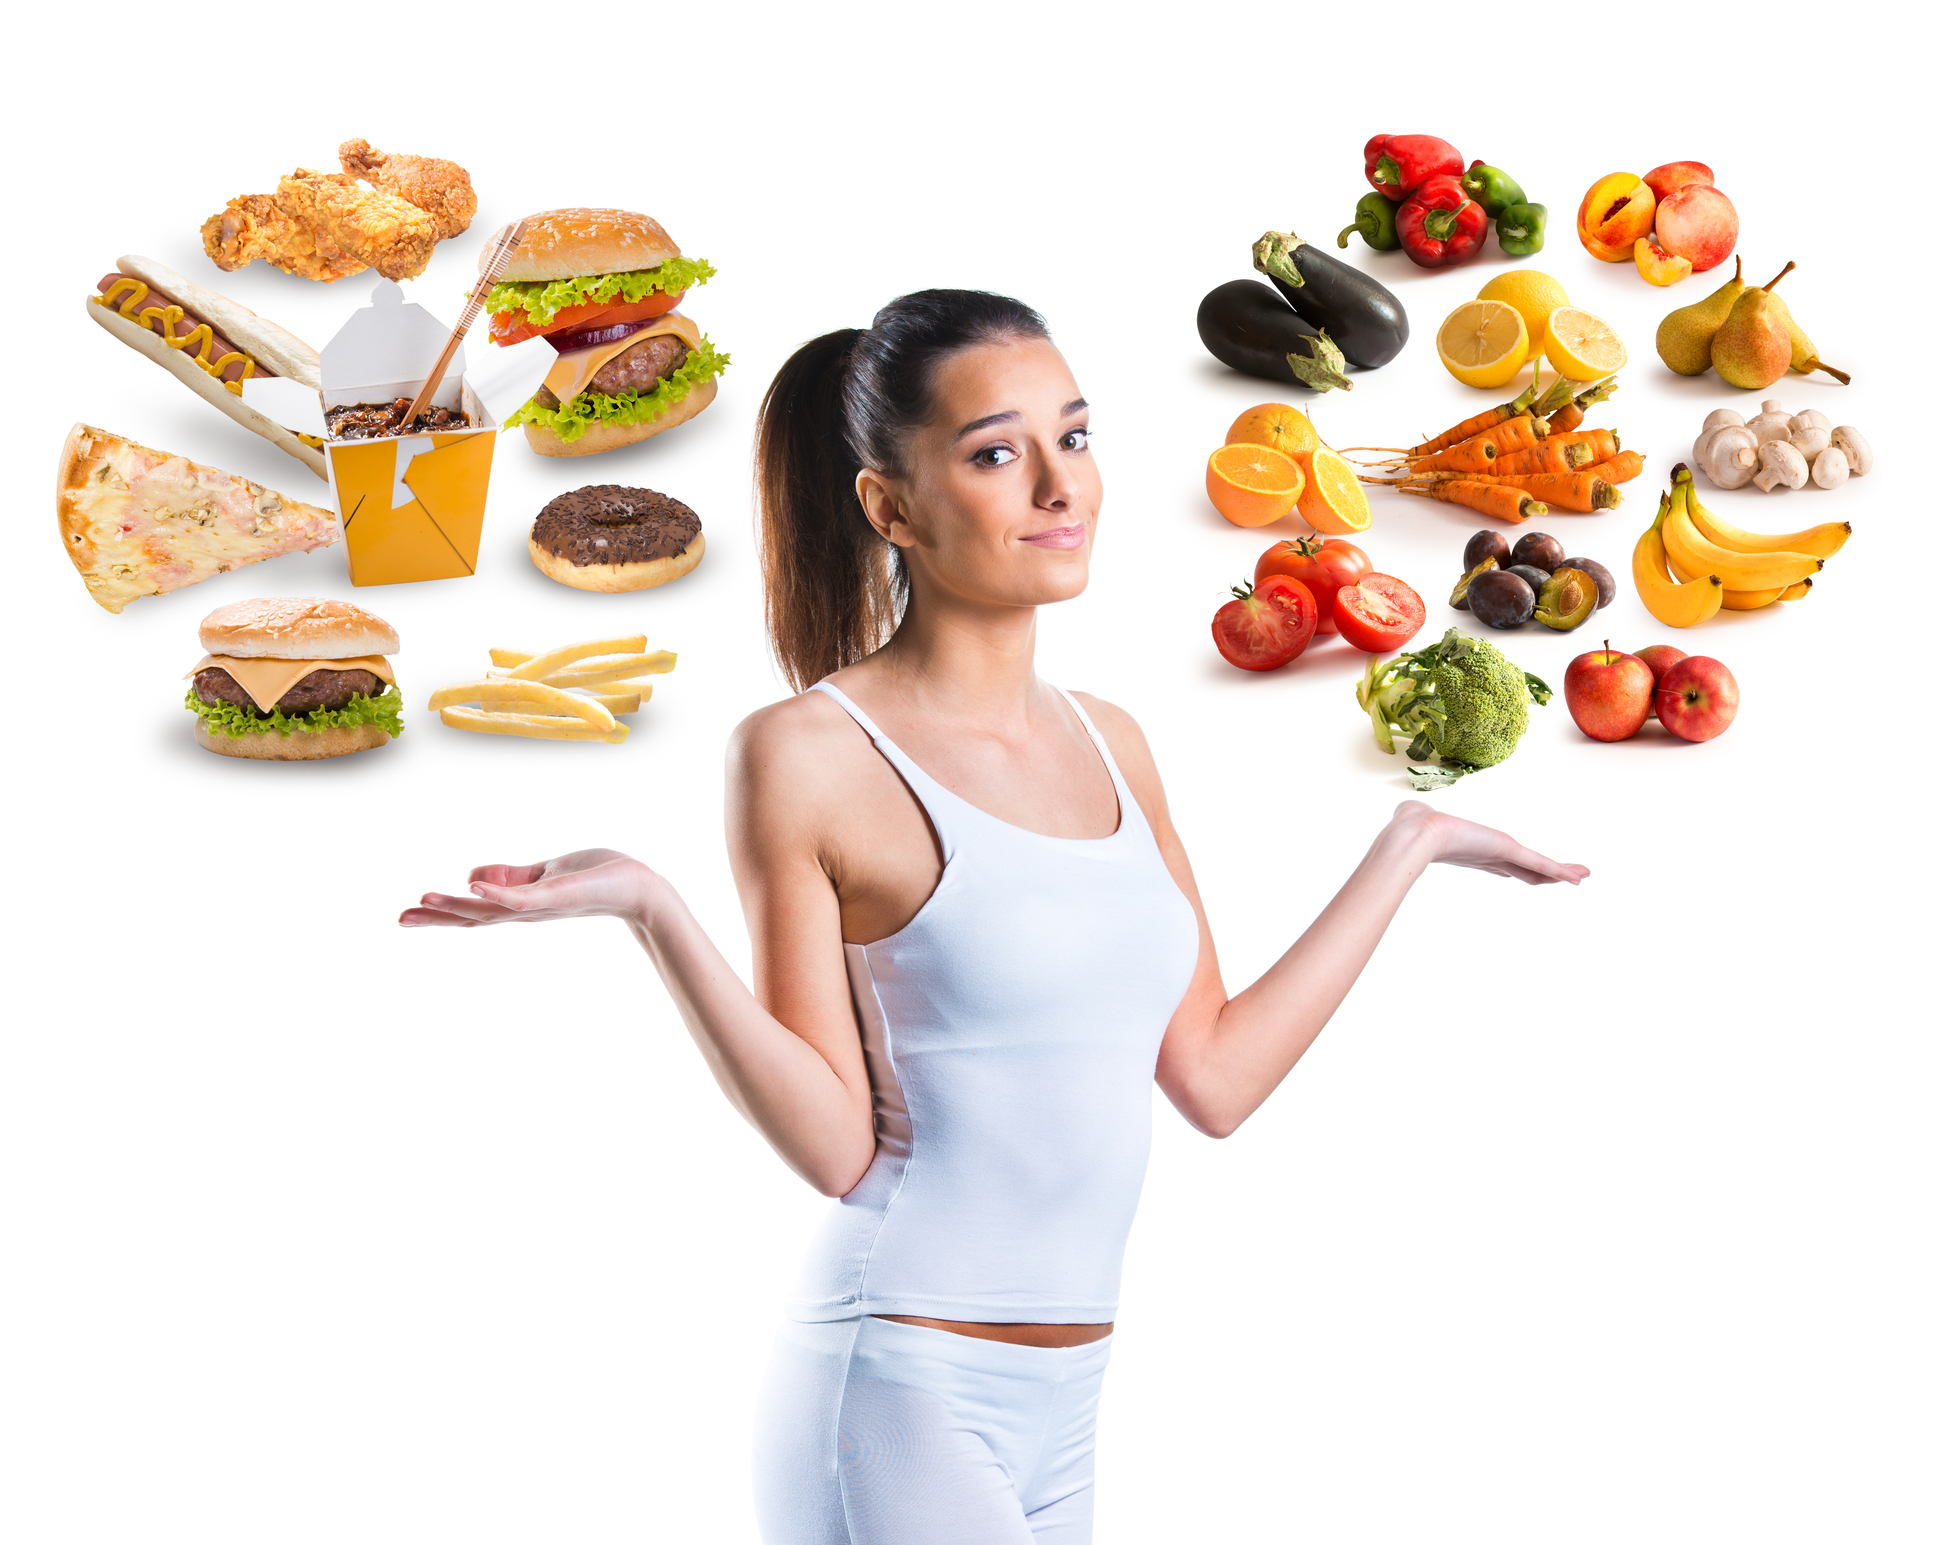 Dieta veganÄ pentru pierderea Ã®n greutate - funcÈioneazÄ?